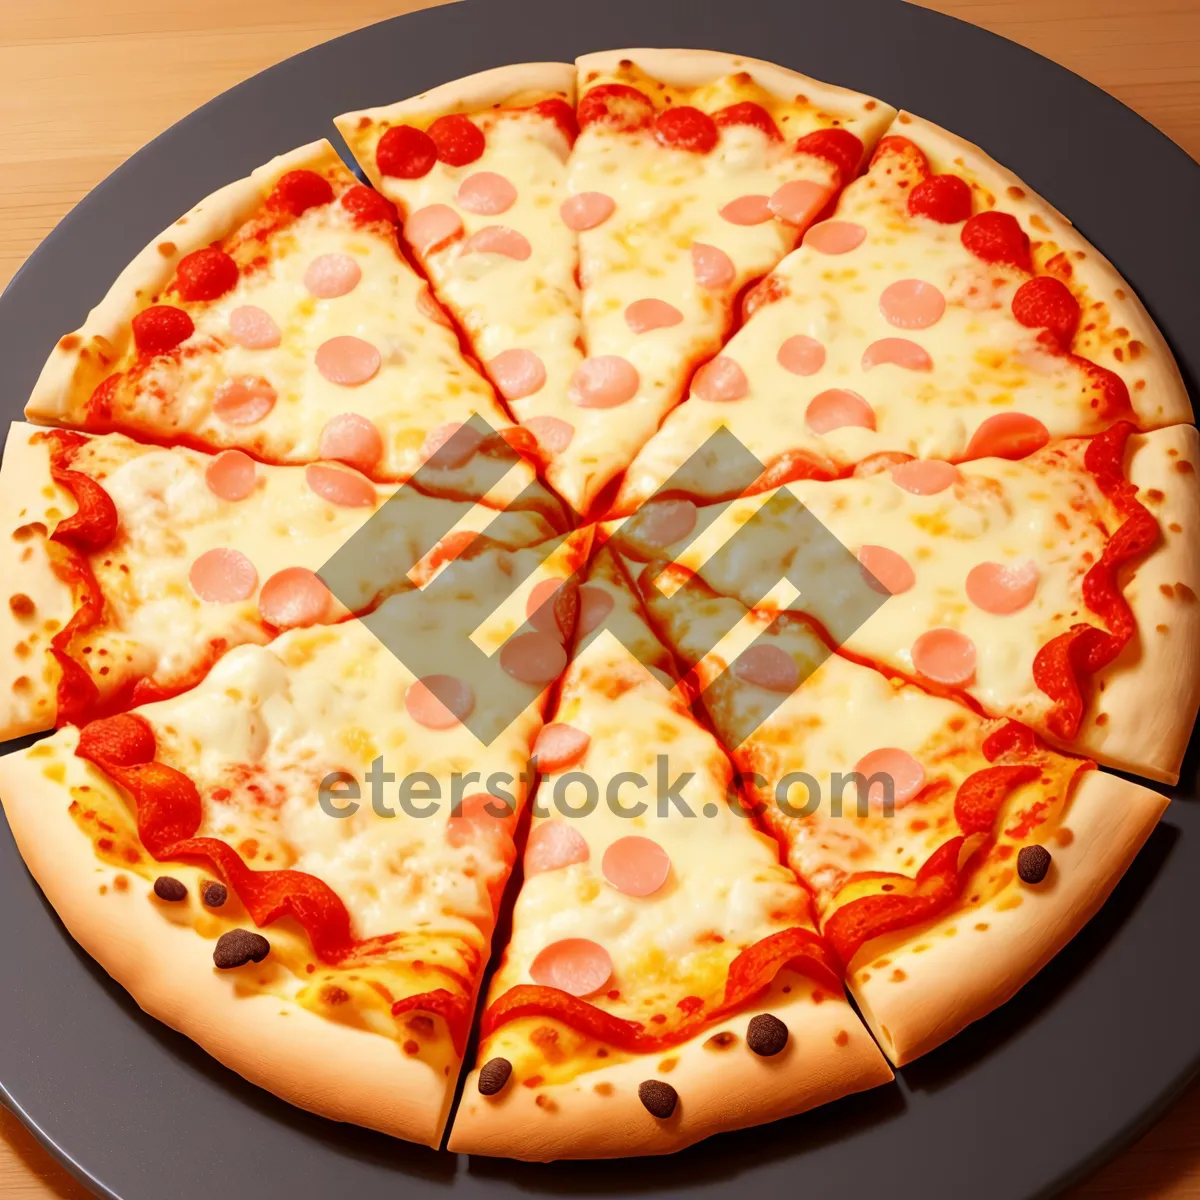 Picture of Delicious Pepperoni Pizza with Mozzarella and Tomato Sauce